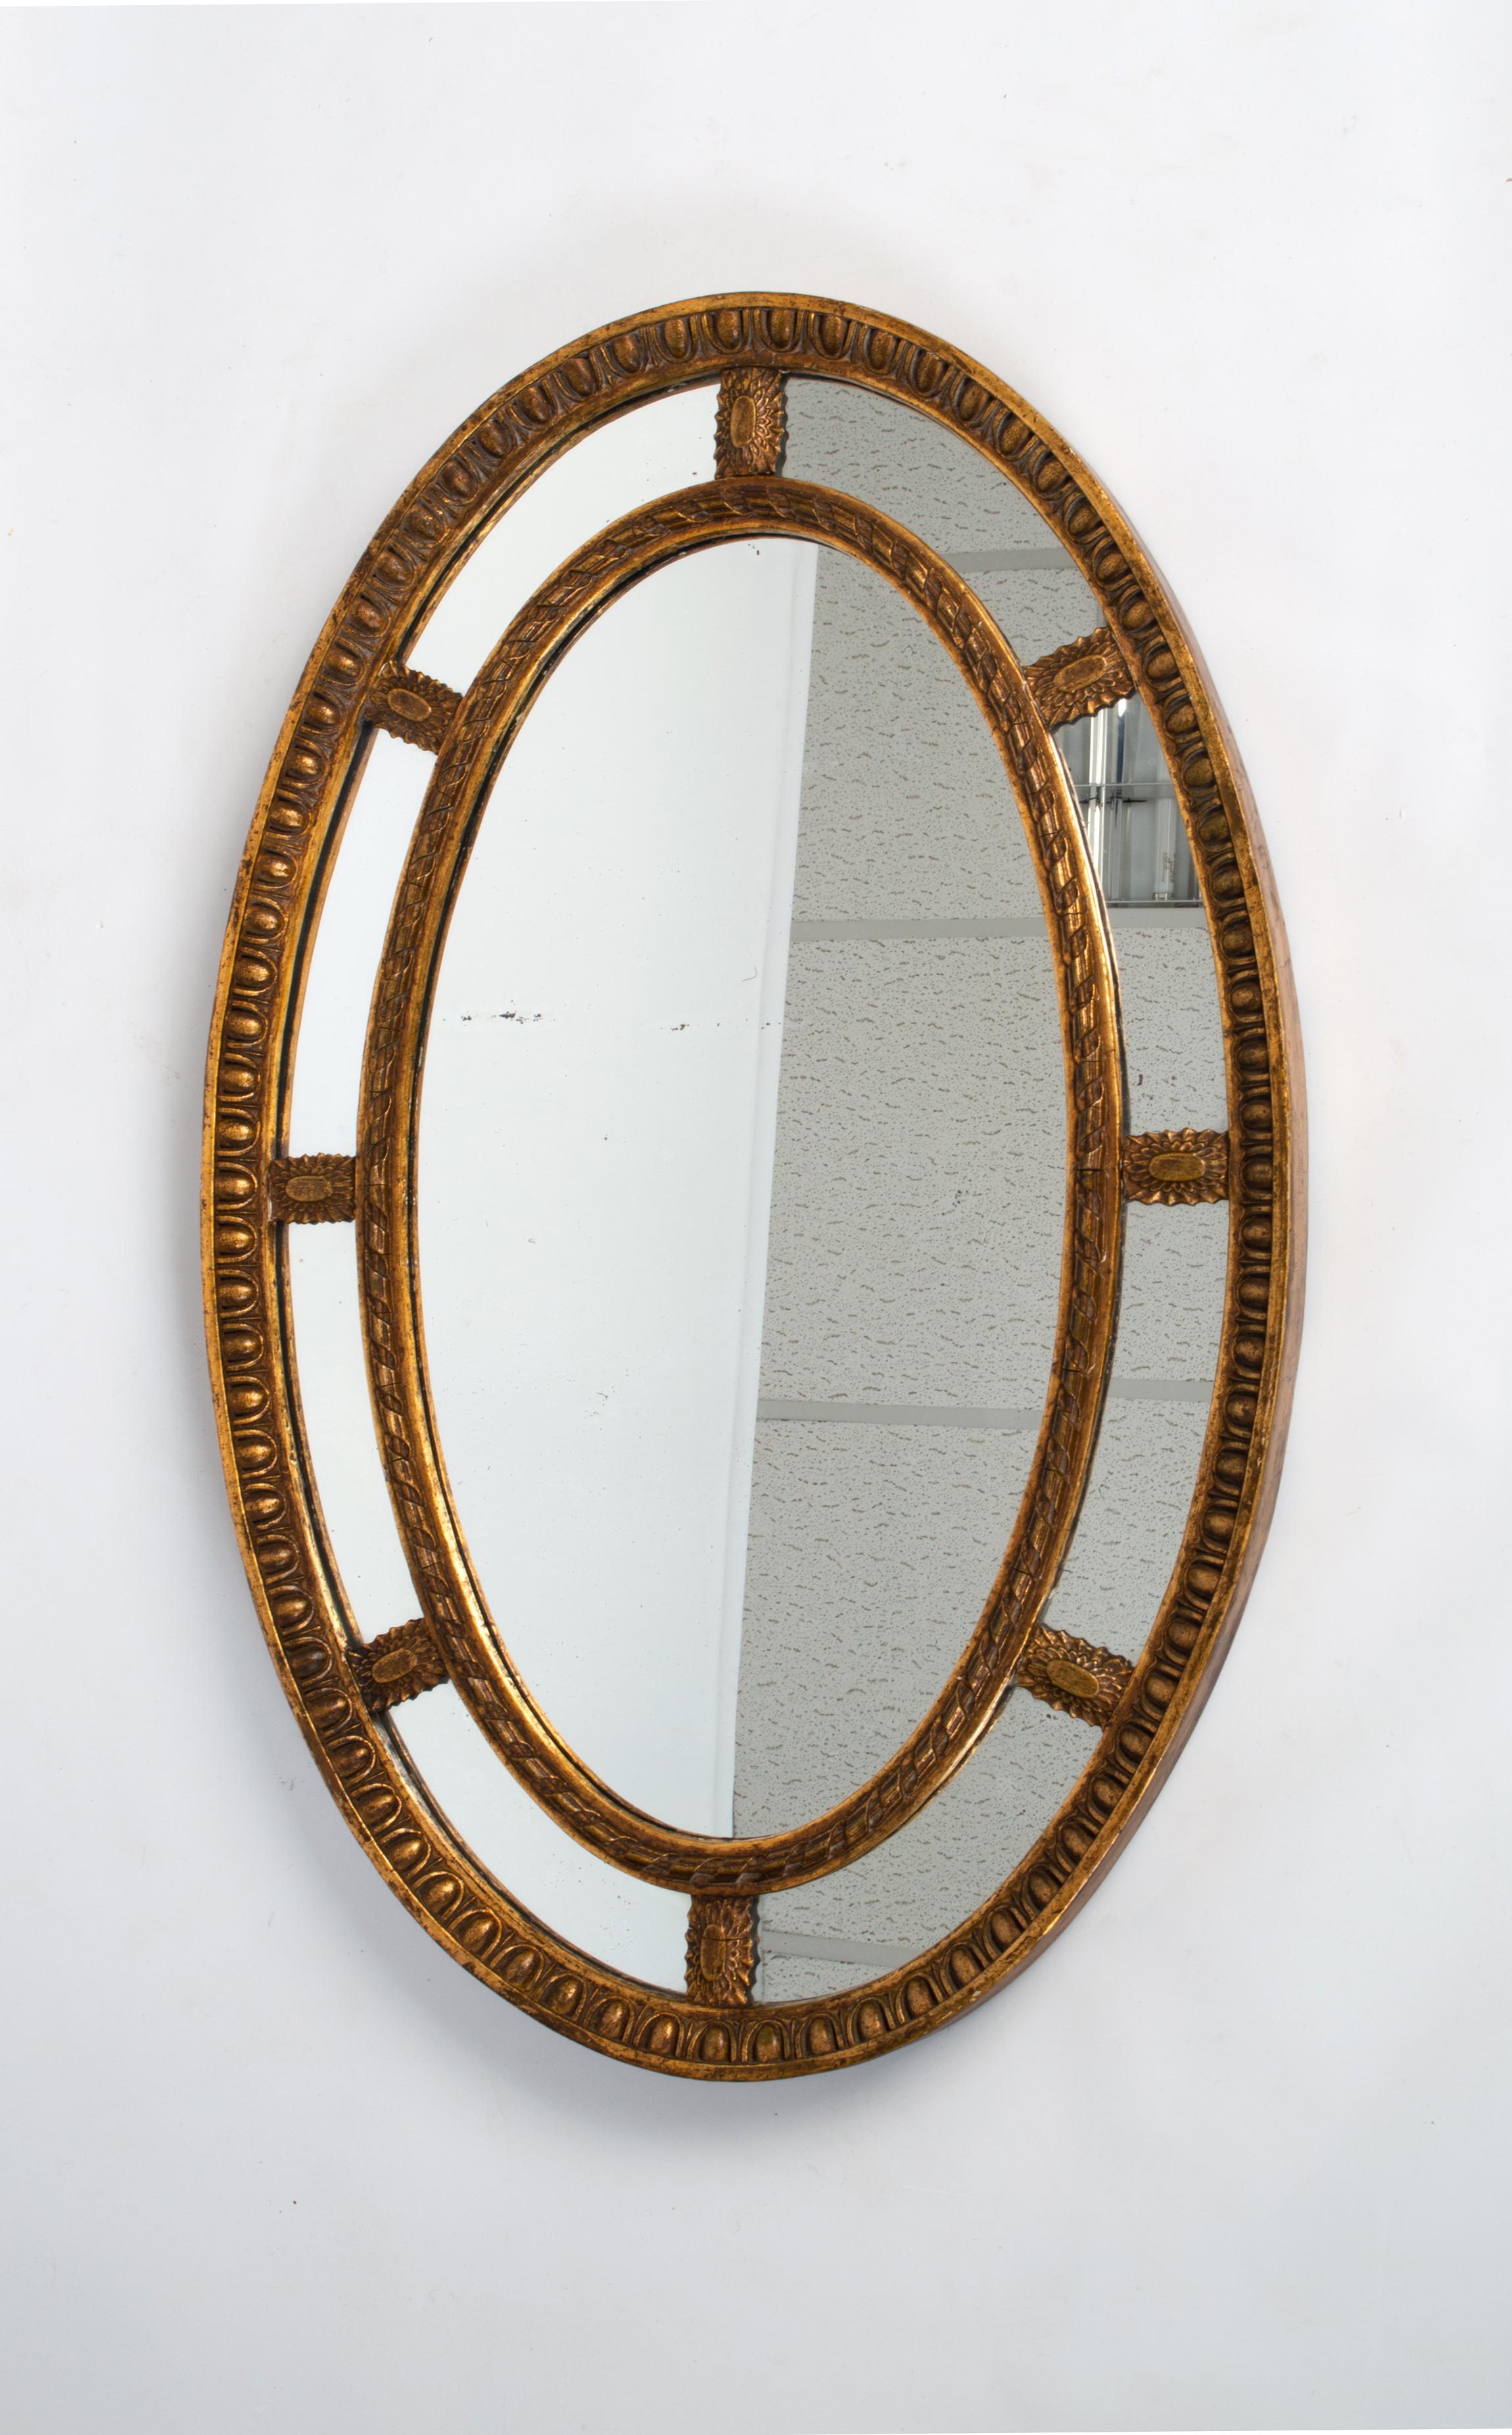 Grand miroir sectionnel ovale anglais ancien en bois doré et gesso
A.I.C. C.1910
Un beau miroir dans le style néoclassique d'Adams.
Présenté en excellent état, légèrement usé, en rapport avec son âge.